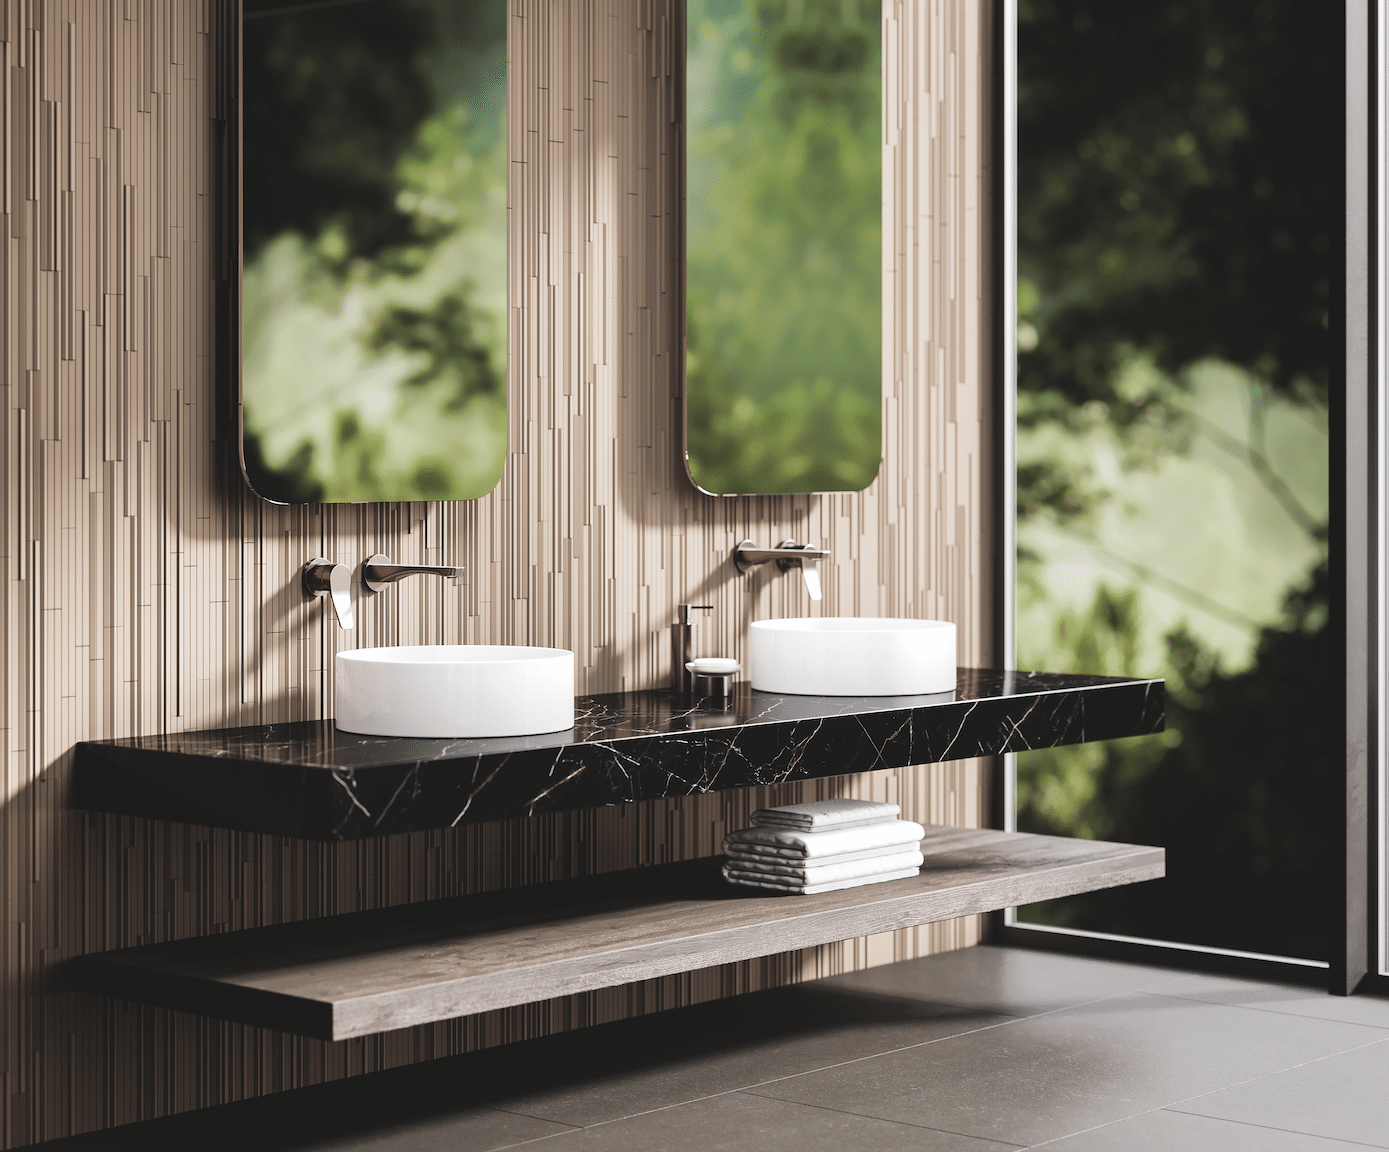 Jörger zeigt ein Badezimmer mit einem schwarzen, marmoriertem Waschtisch und weissen, runden Waschbecken mit matten Armaturen in Nerz.